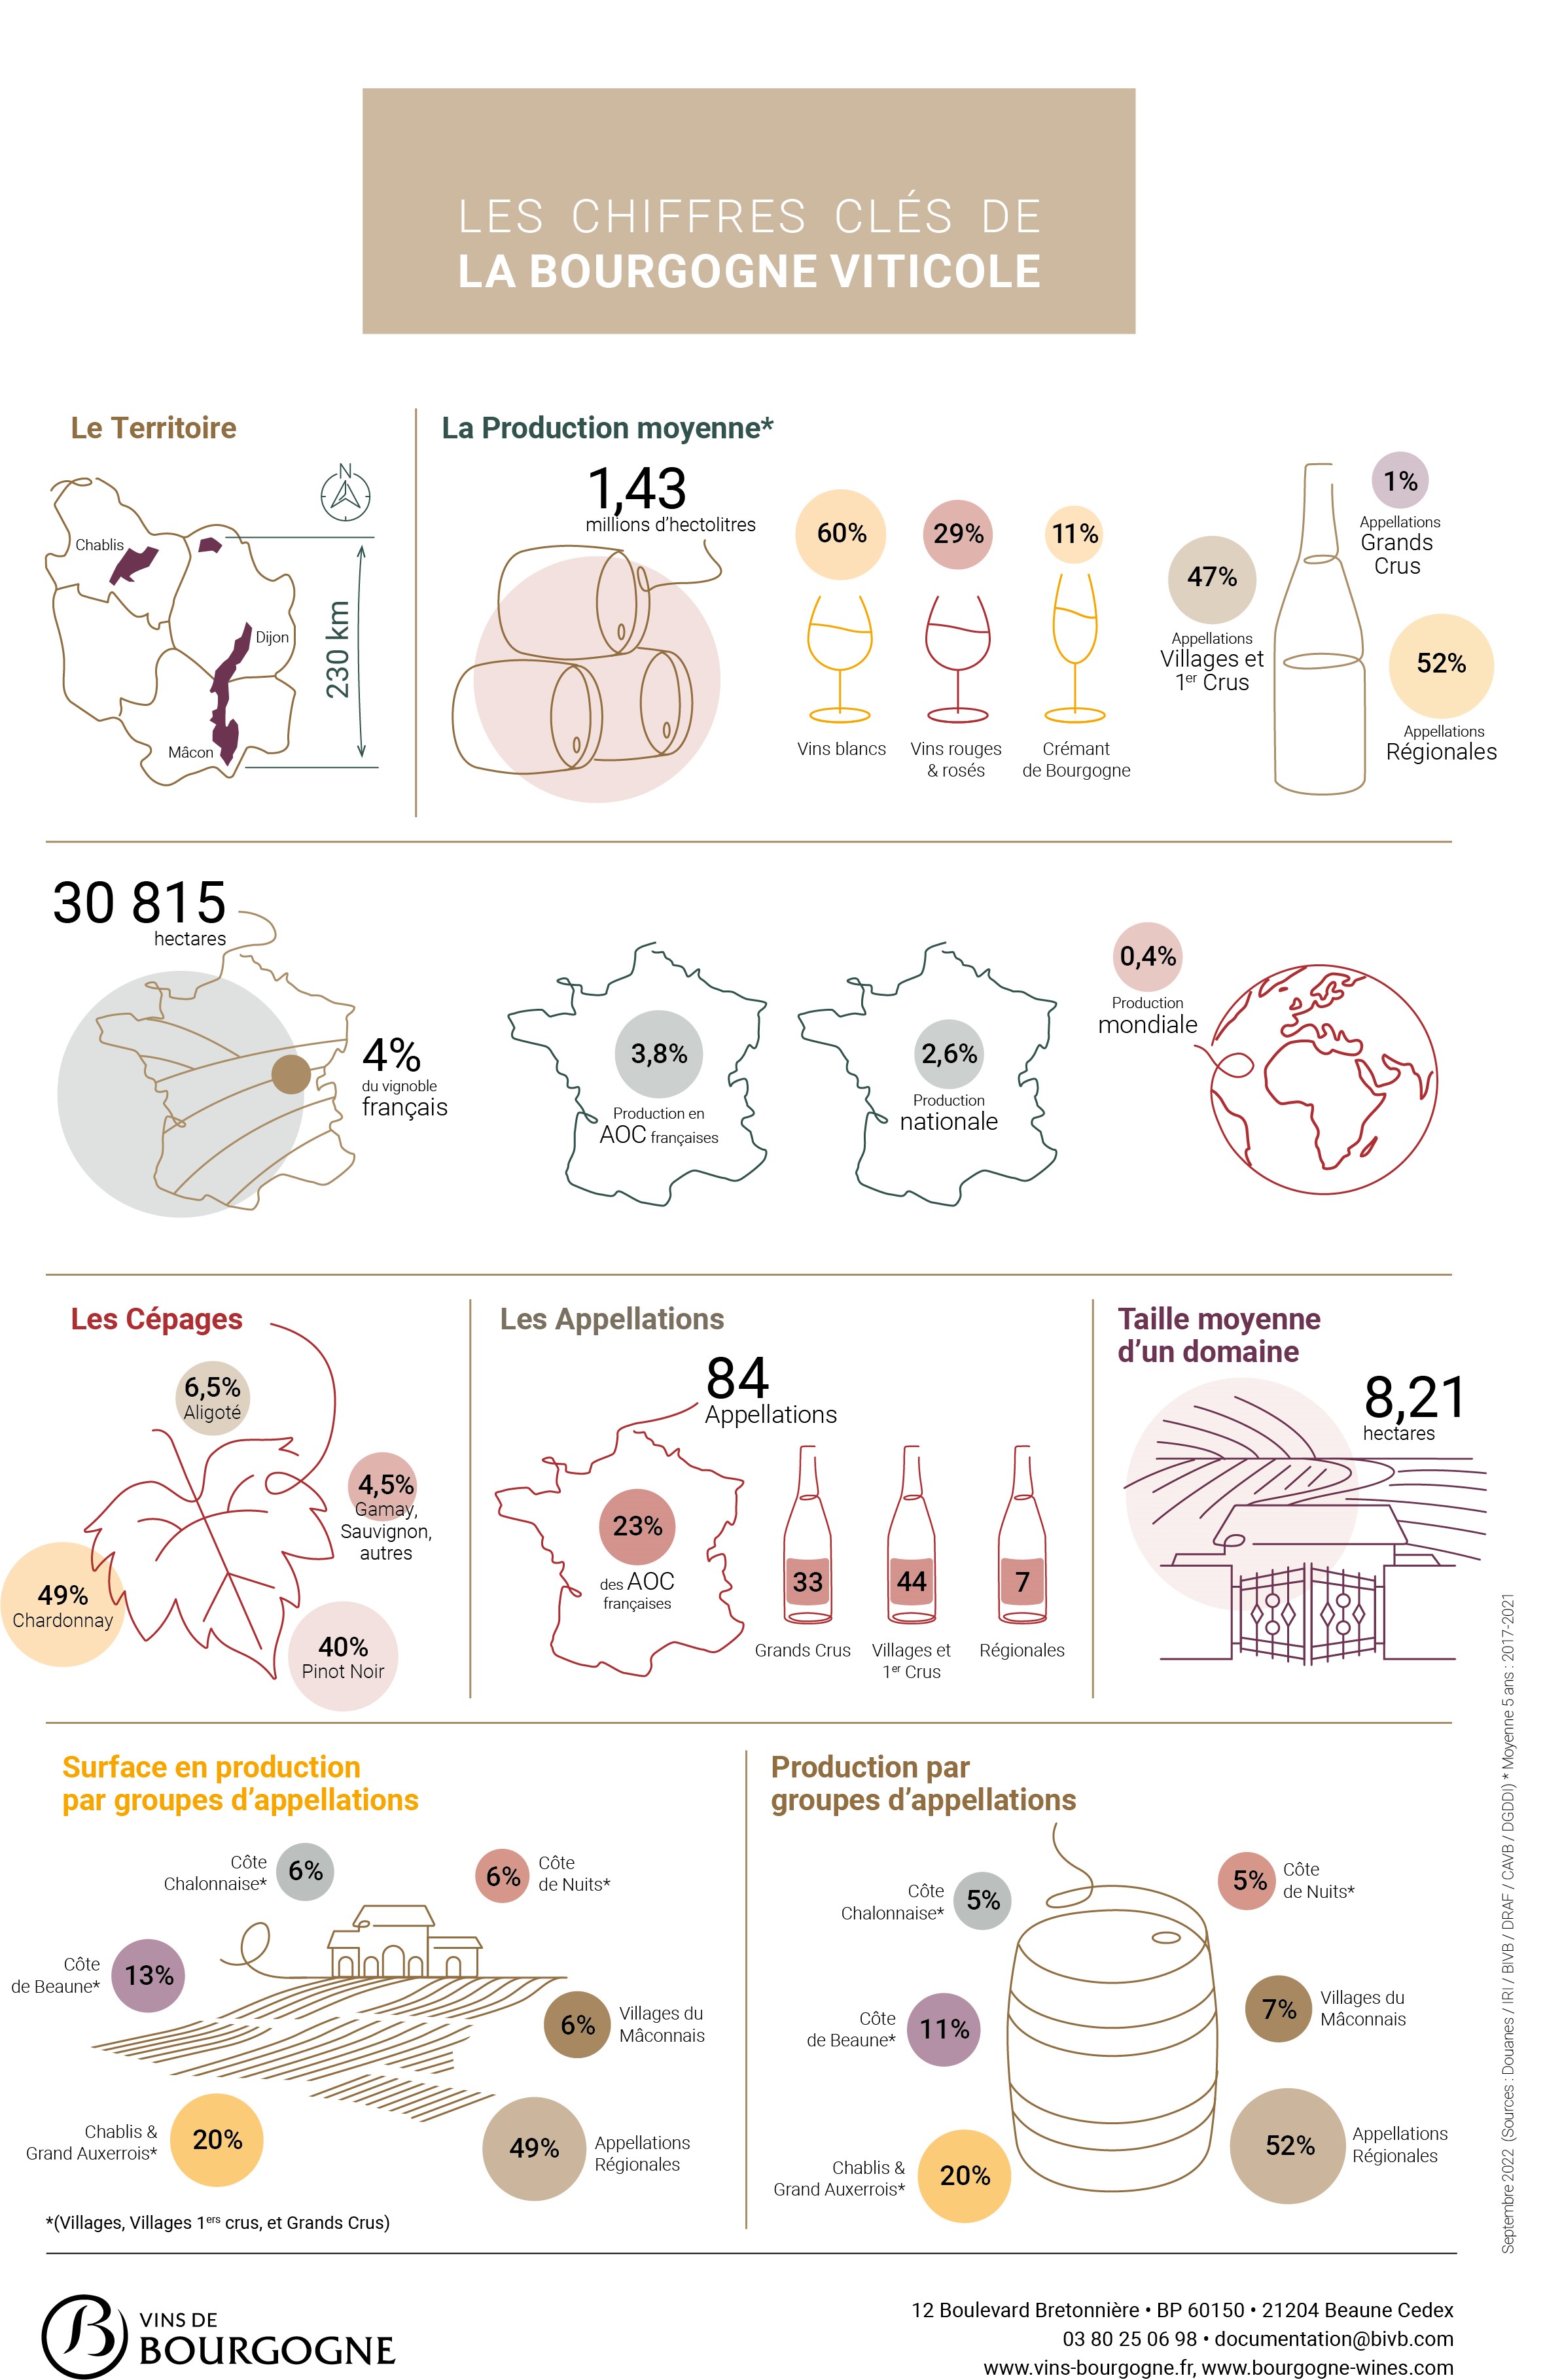 Les chiffres clés de la Bourgogne viticole